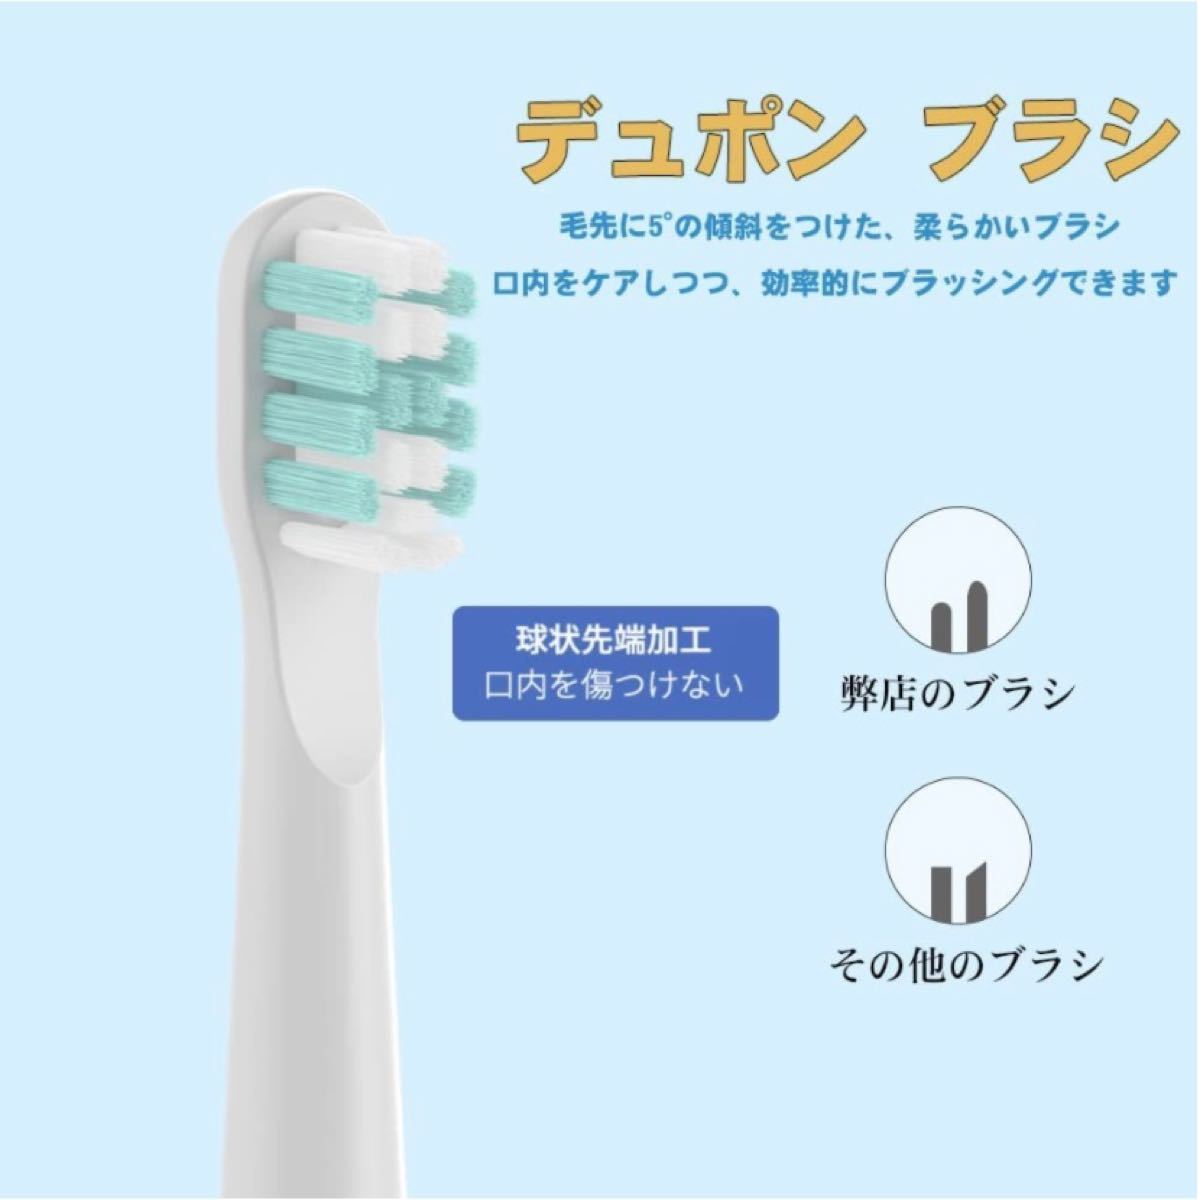 電動歯ブラシ 電動歯磨き 音波歯ブラシ 3本替えブラシ IPX7防水 5モード USB充電 4時間がかかって30日間使用 